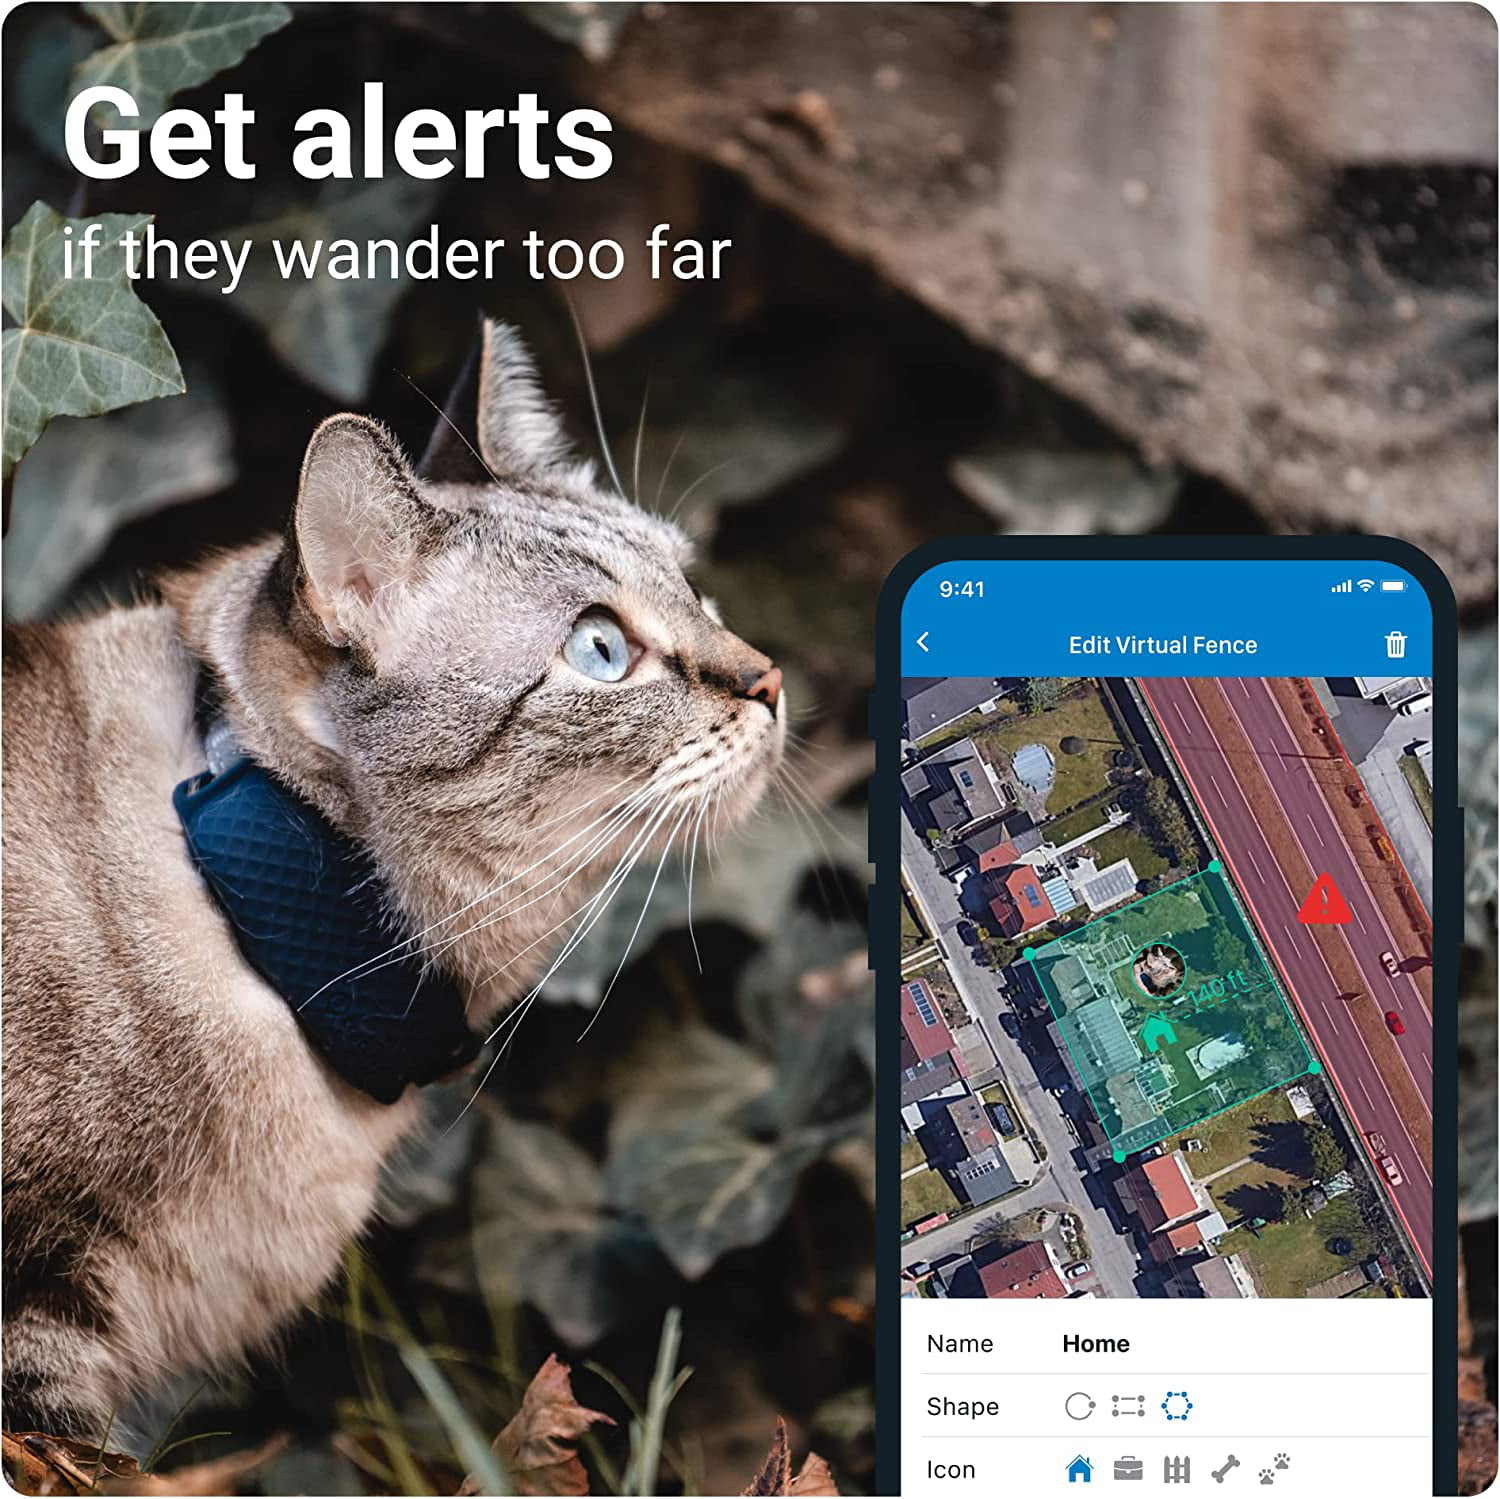 Localizador GPS para Gatos TRACTIVE Cat Mini (Azul)